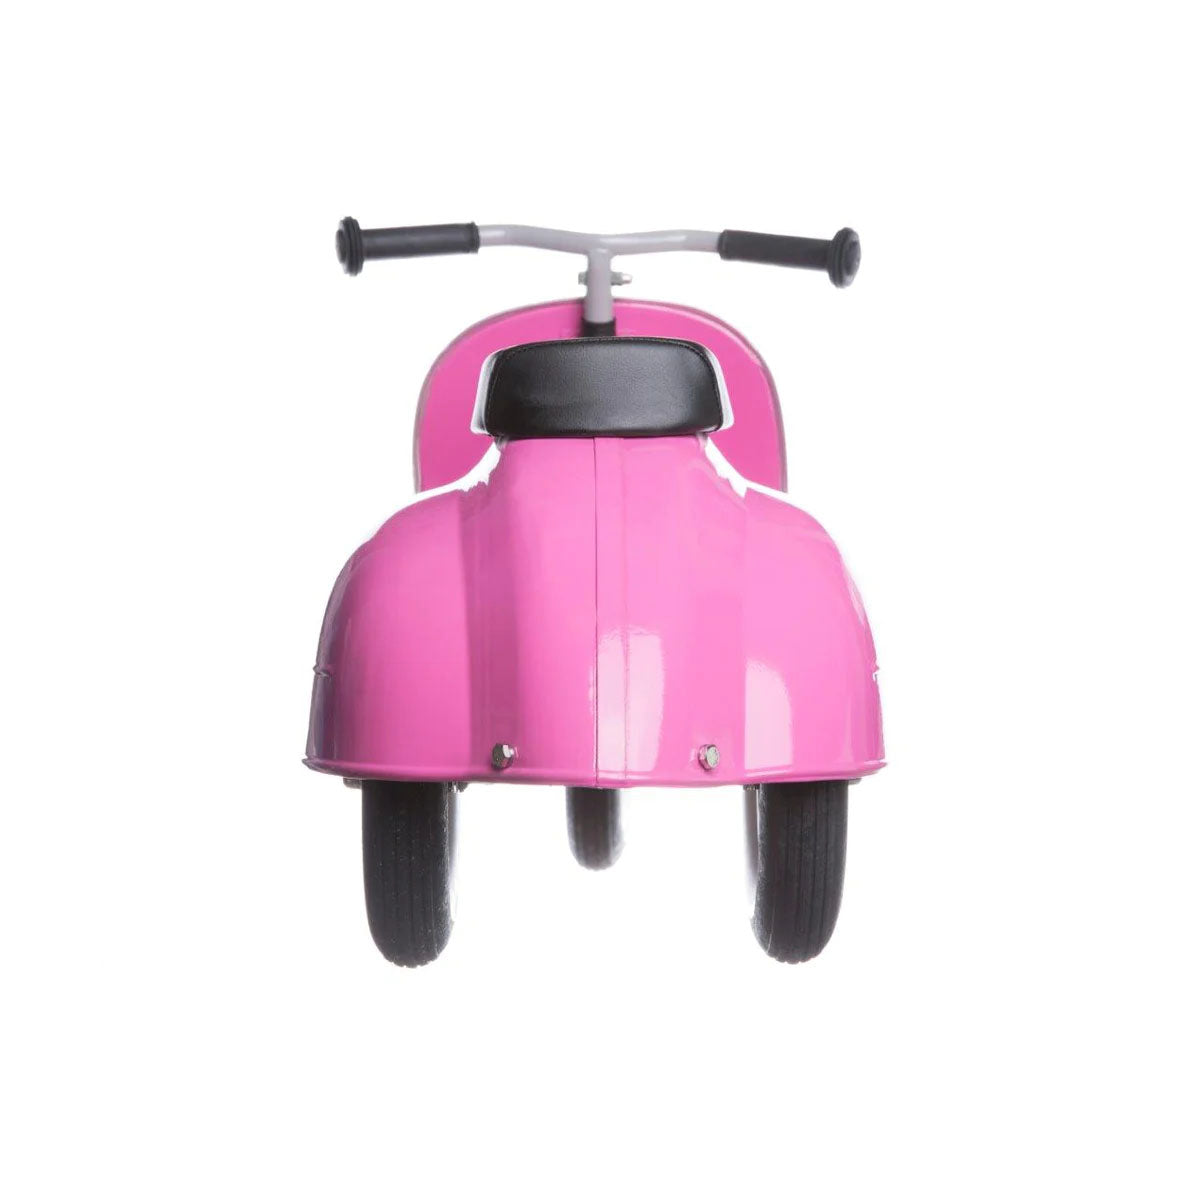 Wat krijg je als je speelplezier combineert met Italiaans design? De prachtige Primo ride-on loopscooter van Ambosstoys in het roze! Deze mooie loopscooter ziet er niet alleen prachtig uit, maar zal ook voor uren speelplezier zorgen bij je kleintje. VanZus